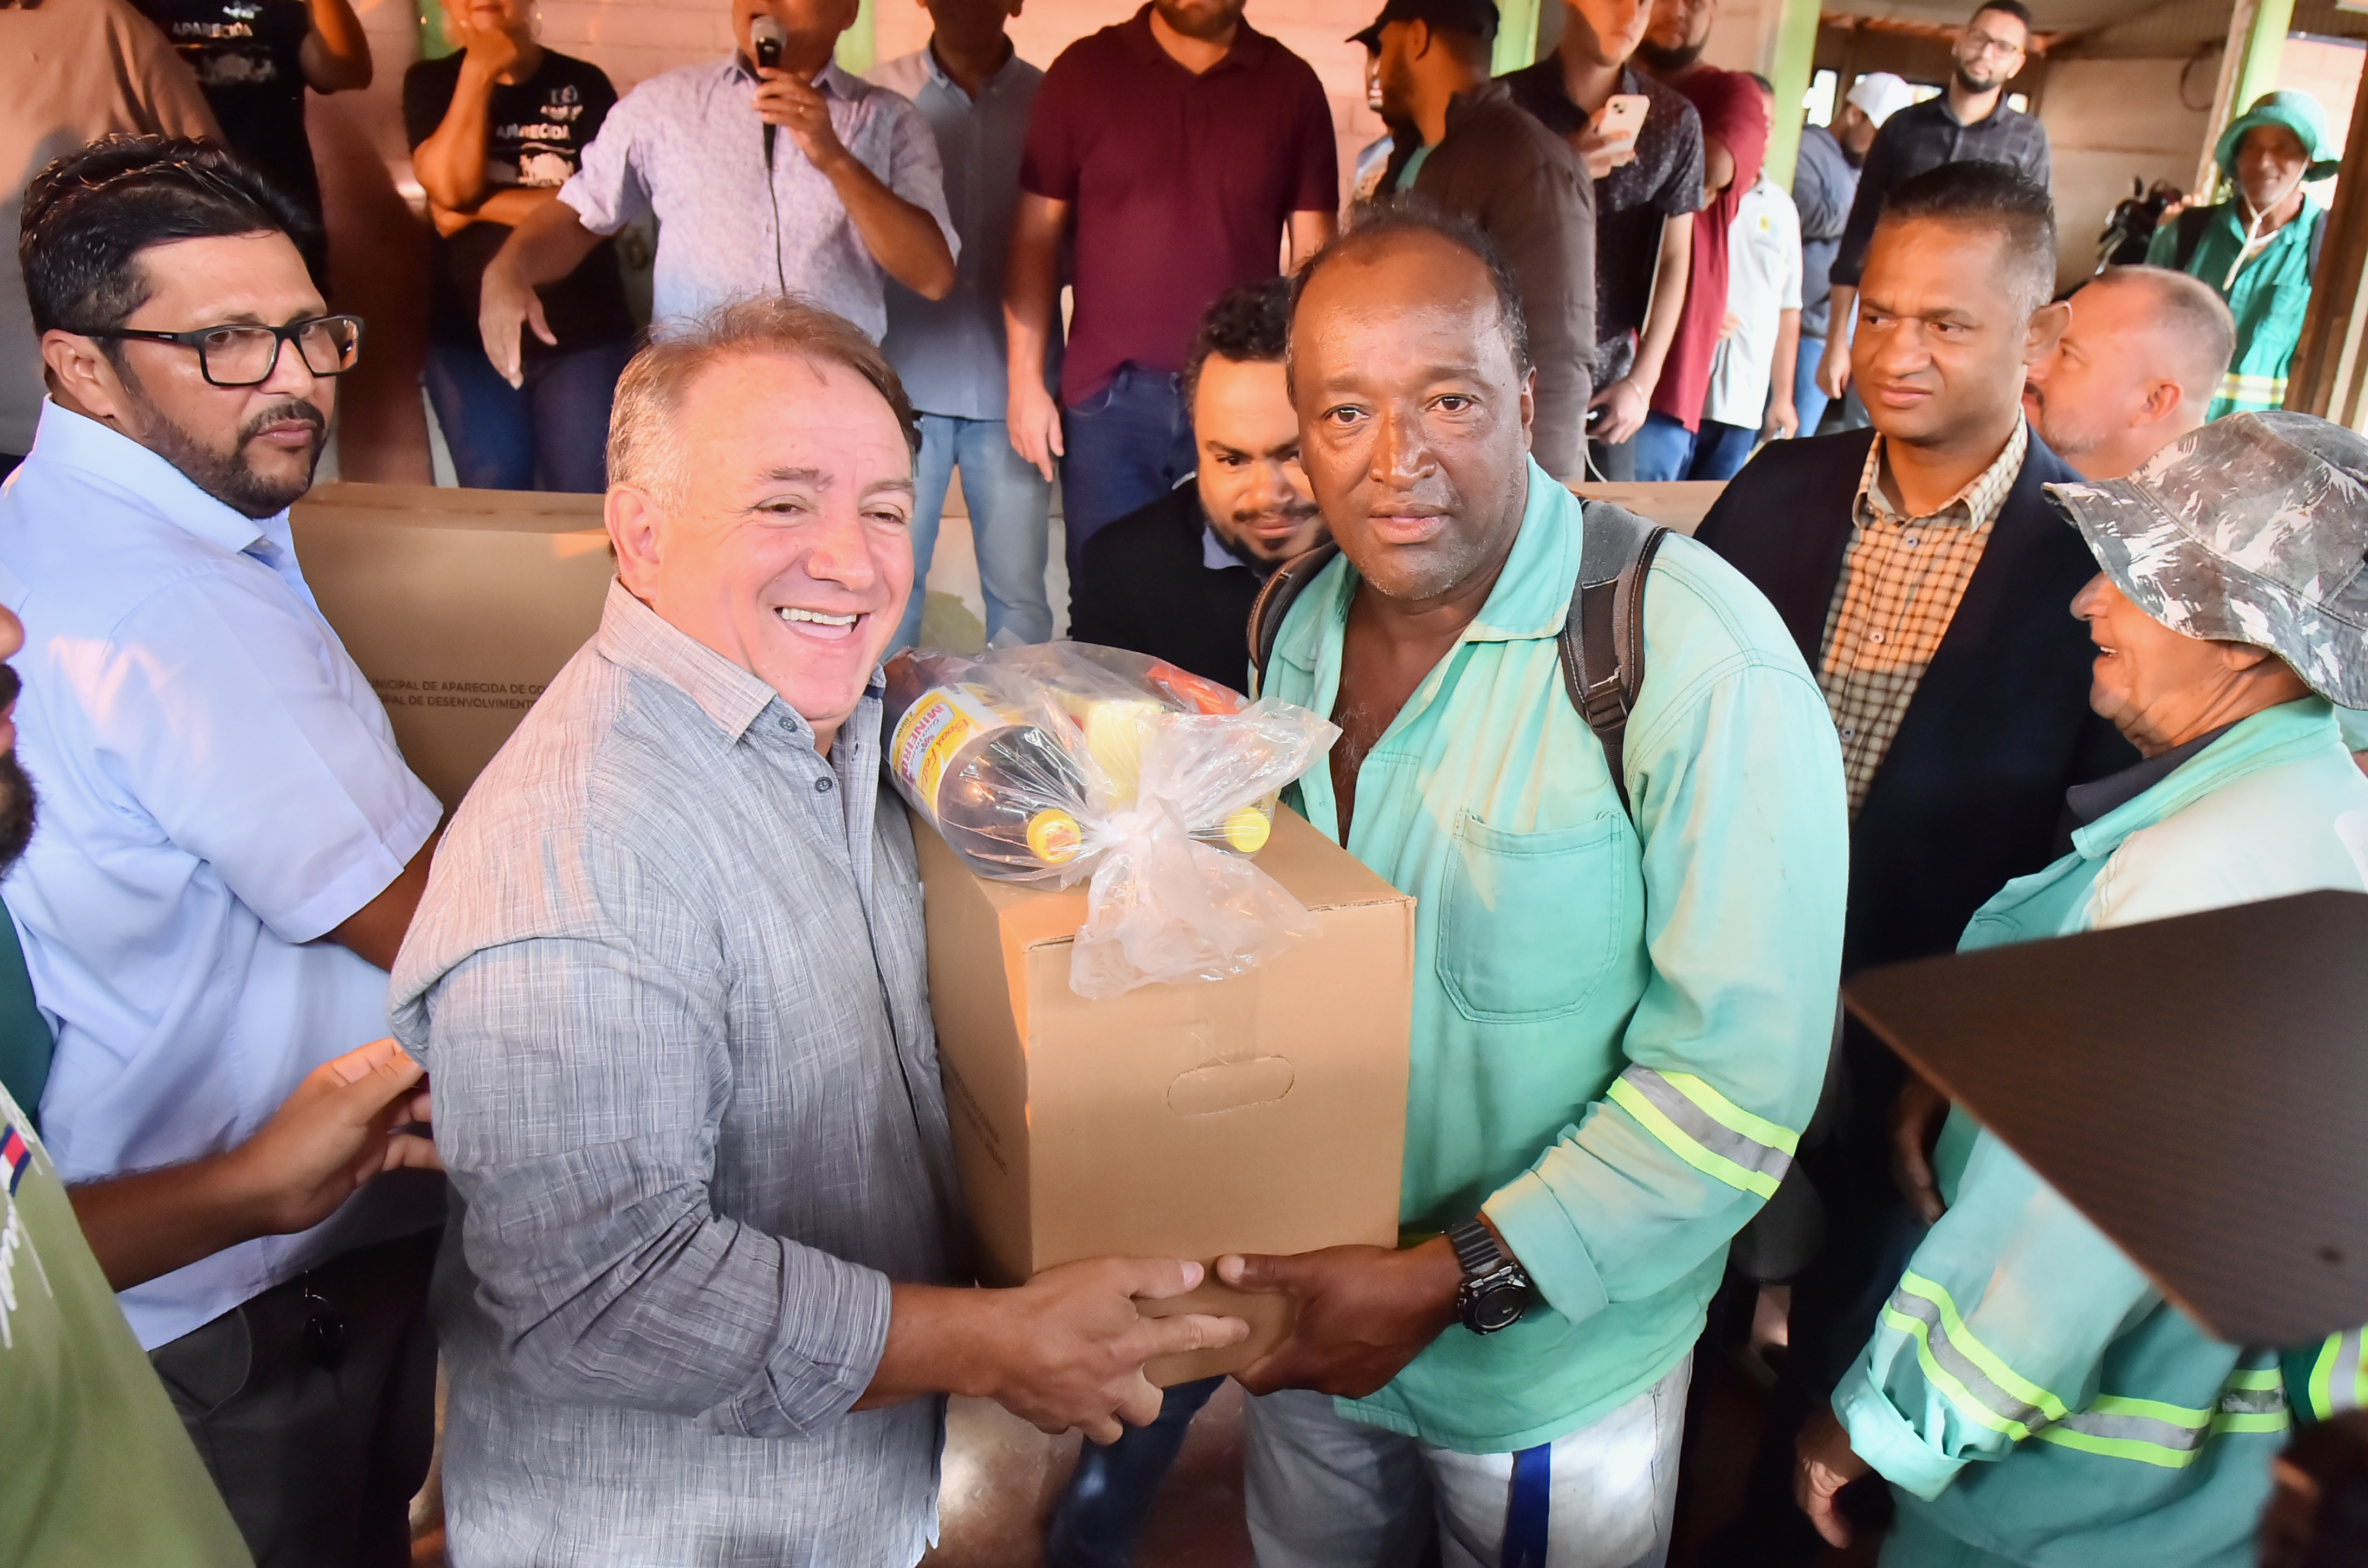 Prefeitura Municipal de Aparecida de Goiânia | Prefeitura de Aparecida  entrega mais de 700 cestas para trabalhadores urbanos